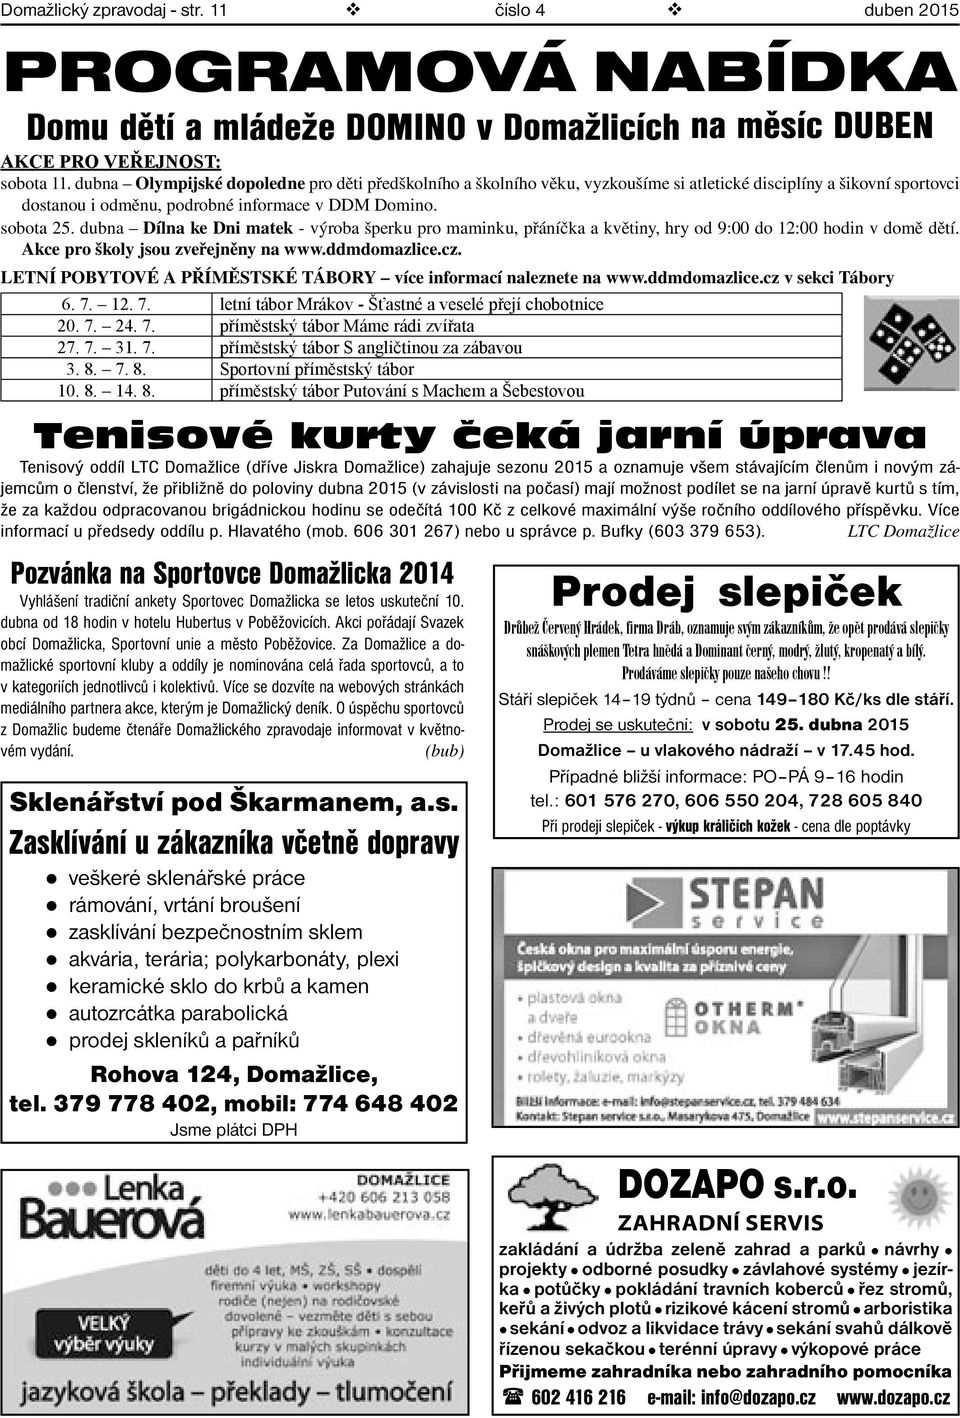 Miloš Zeman v Domažlicích - PDF Stažení zdarma